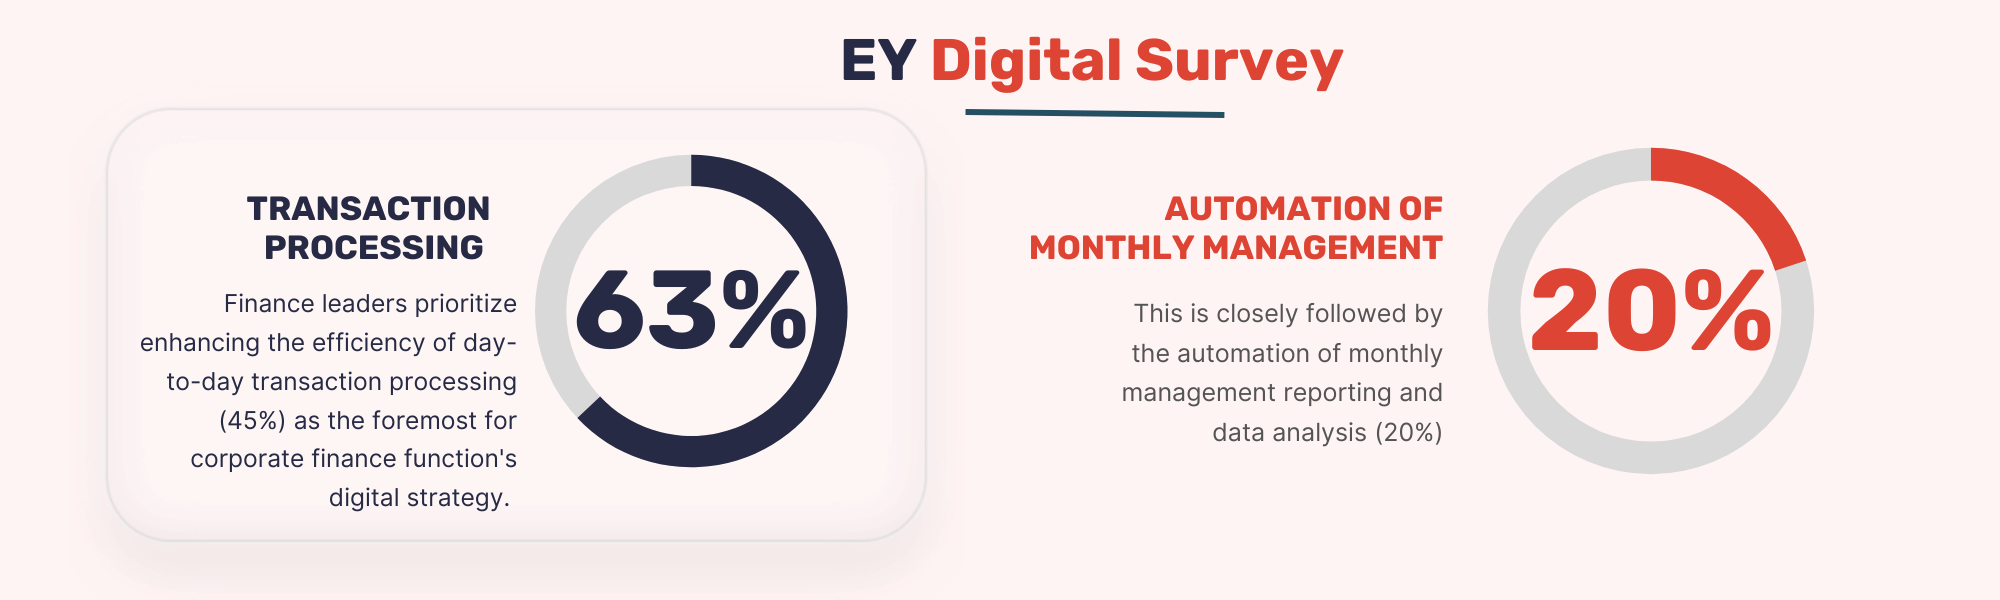 EY Digital Survey